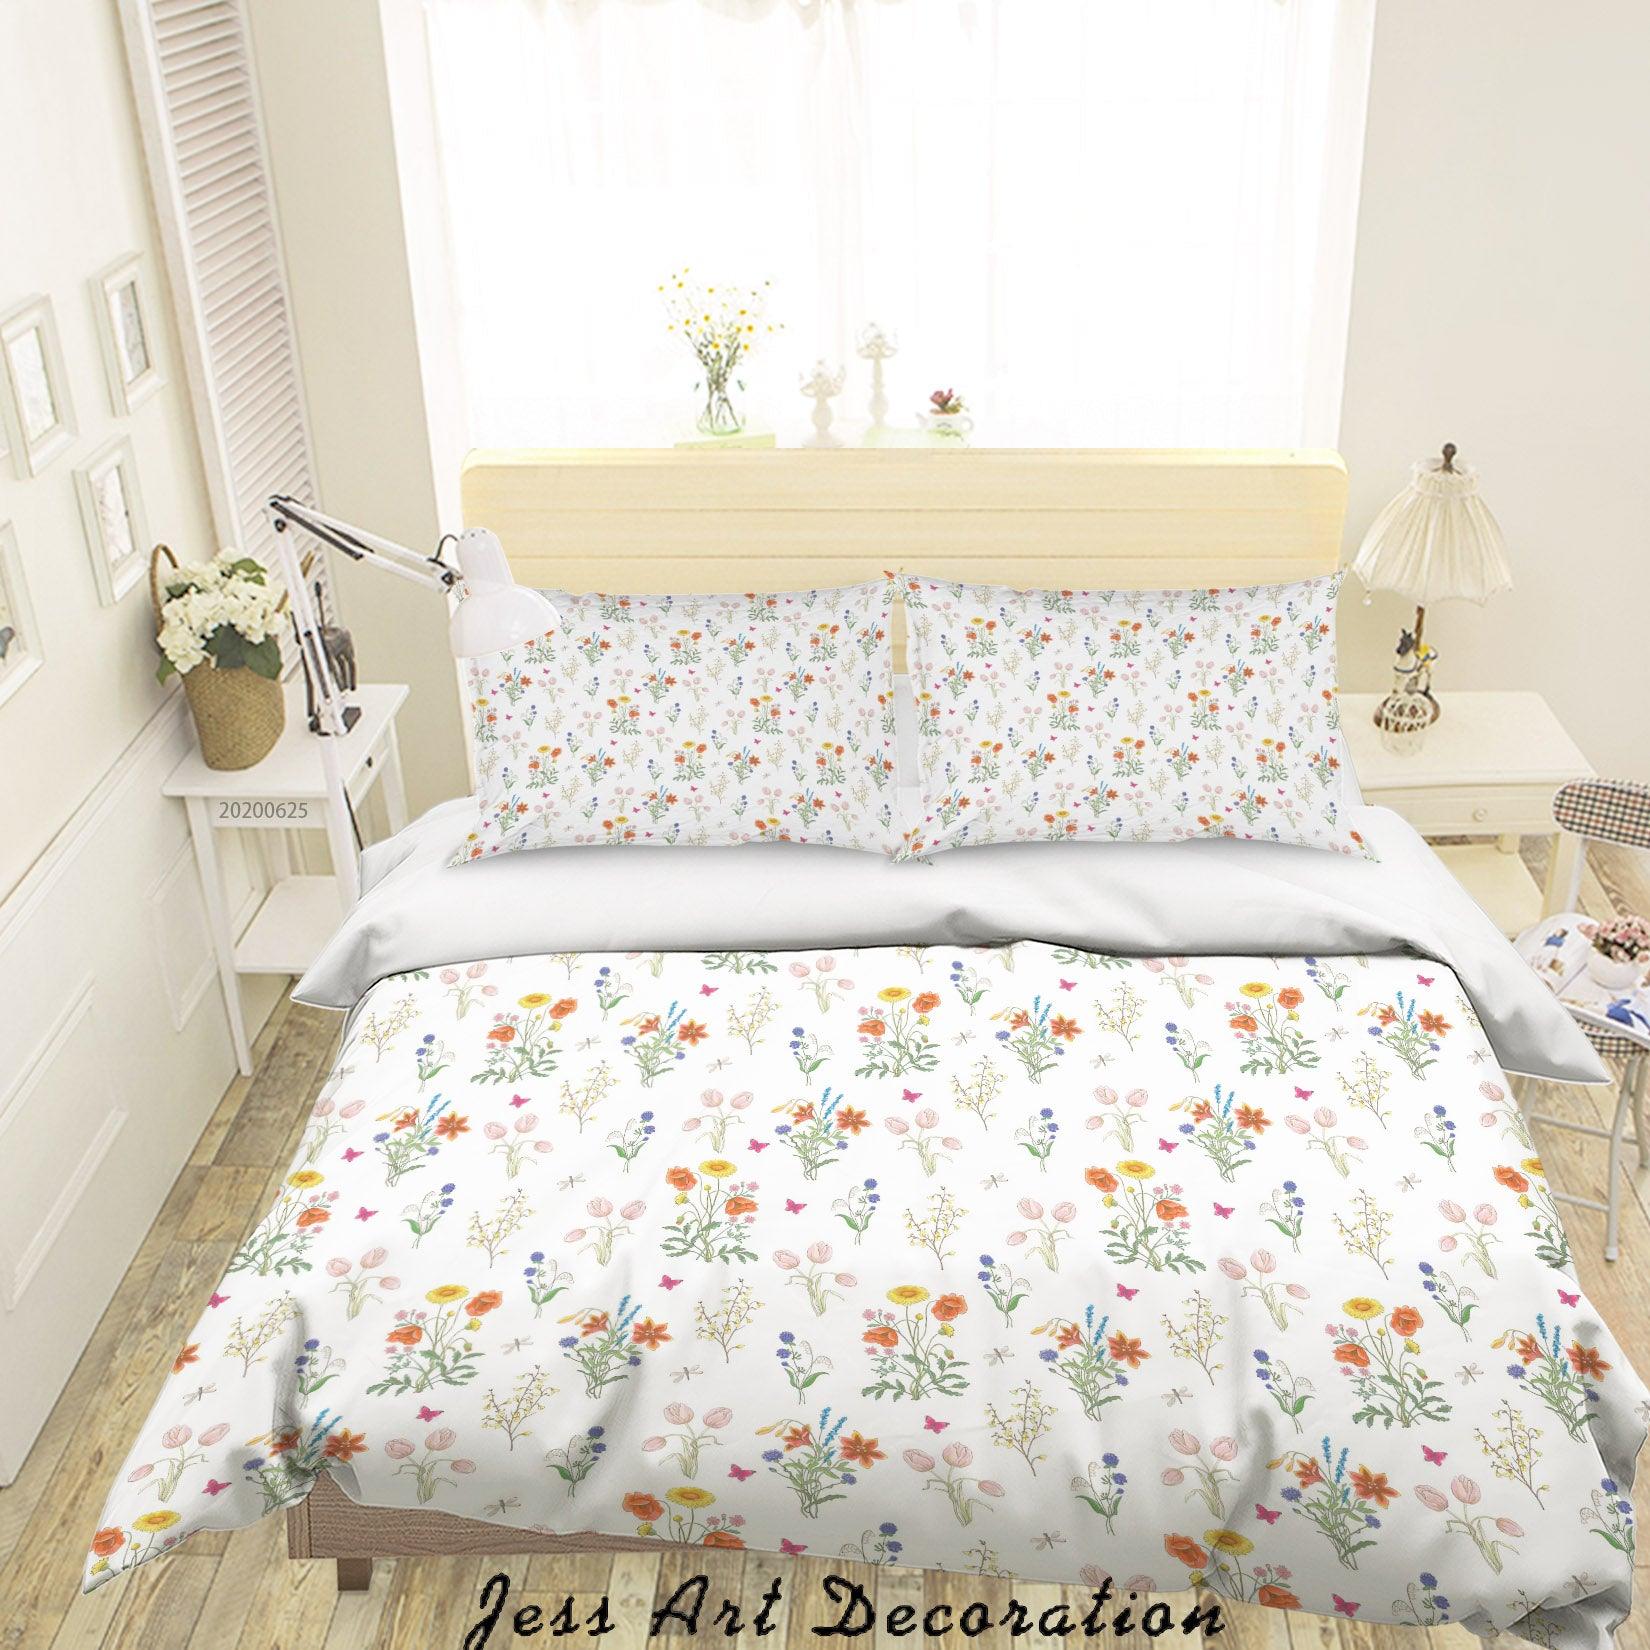 3D White Floral Quilt Cover Set Bedding Set Duvet Cover Pillowcases SF138- Jess Art Decoration